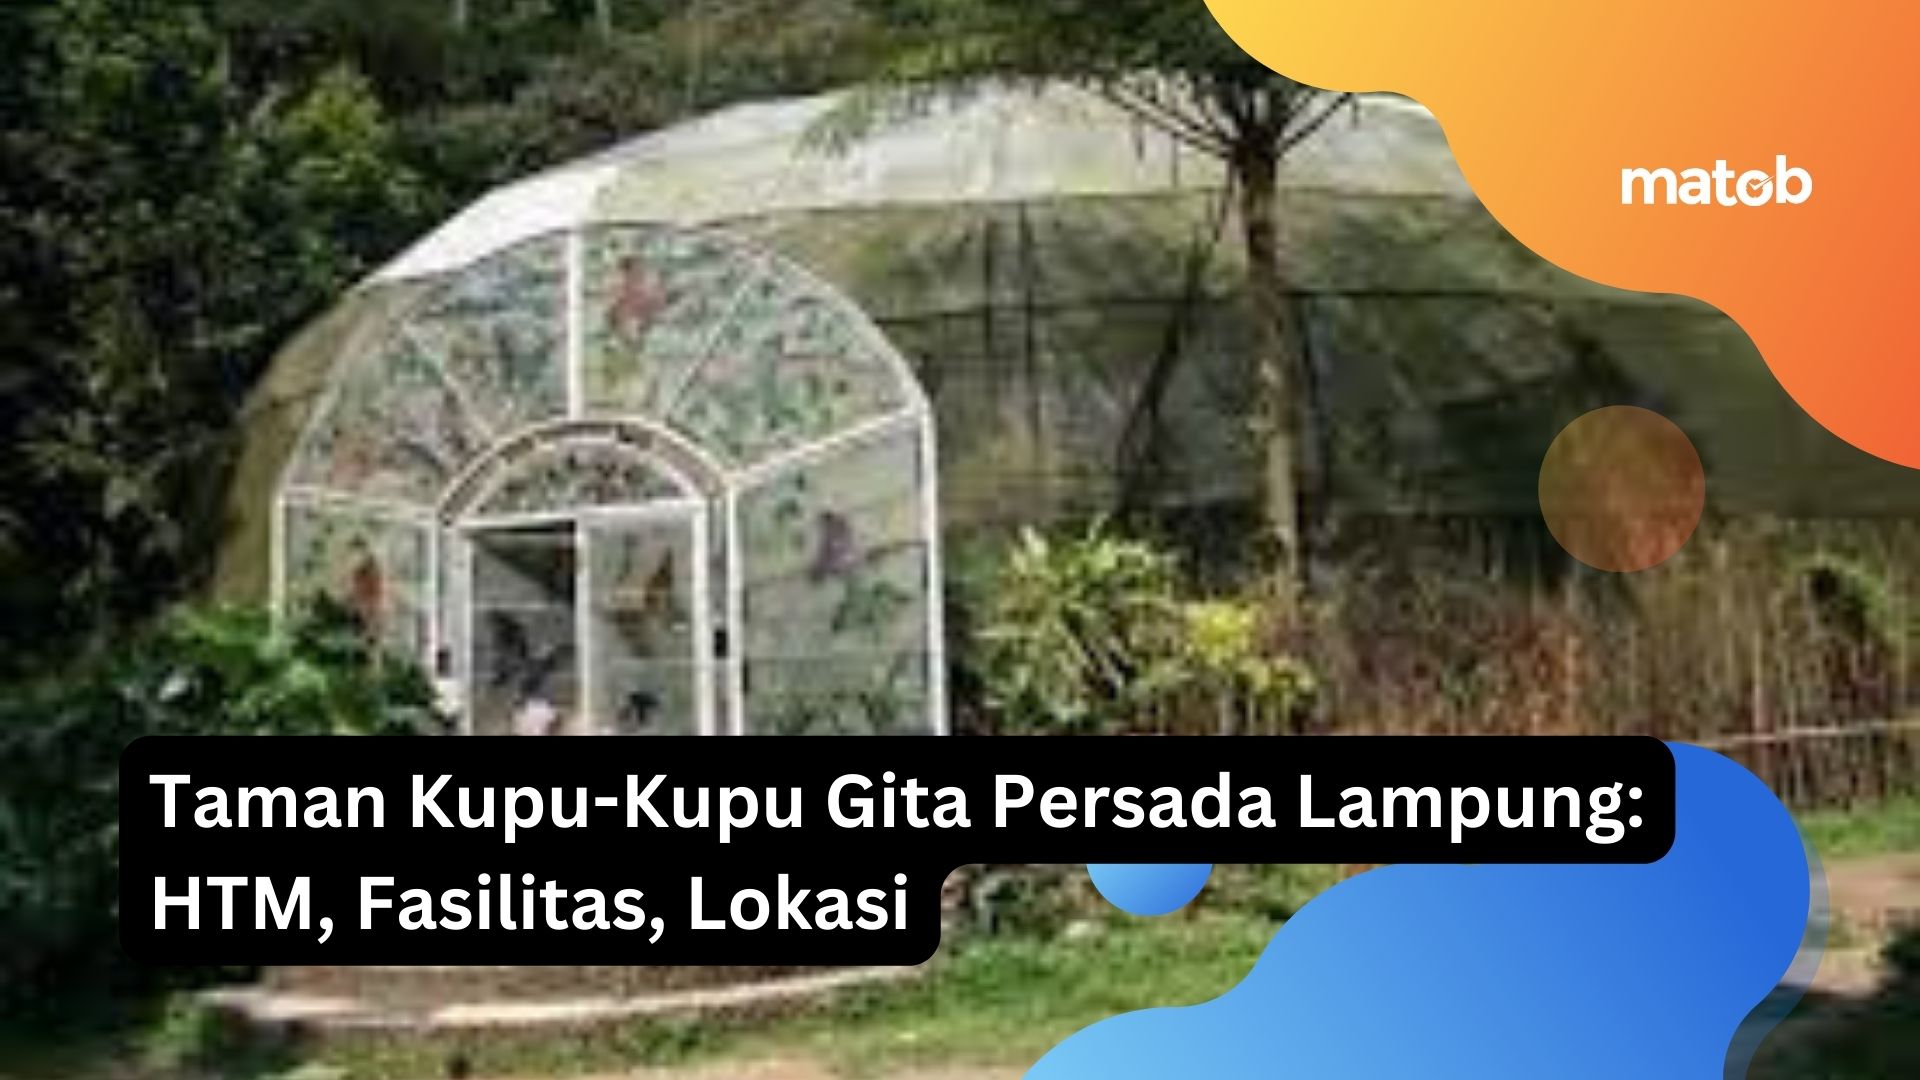 Taman Kupu-Kupu Gita Persada Lampung: HTM, Fasilitas, Lokasi